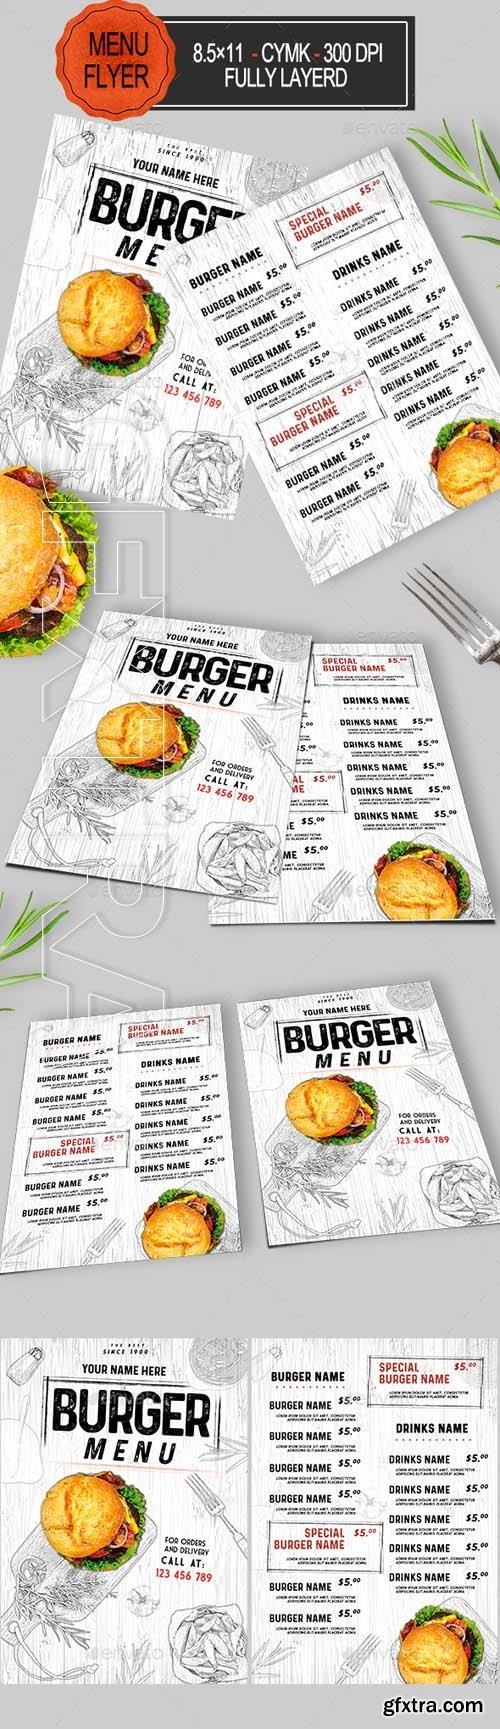 GraphicRiver - Burger Menu 20471890